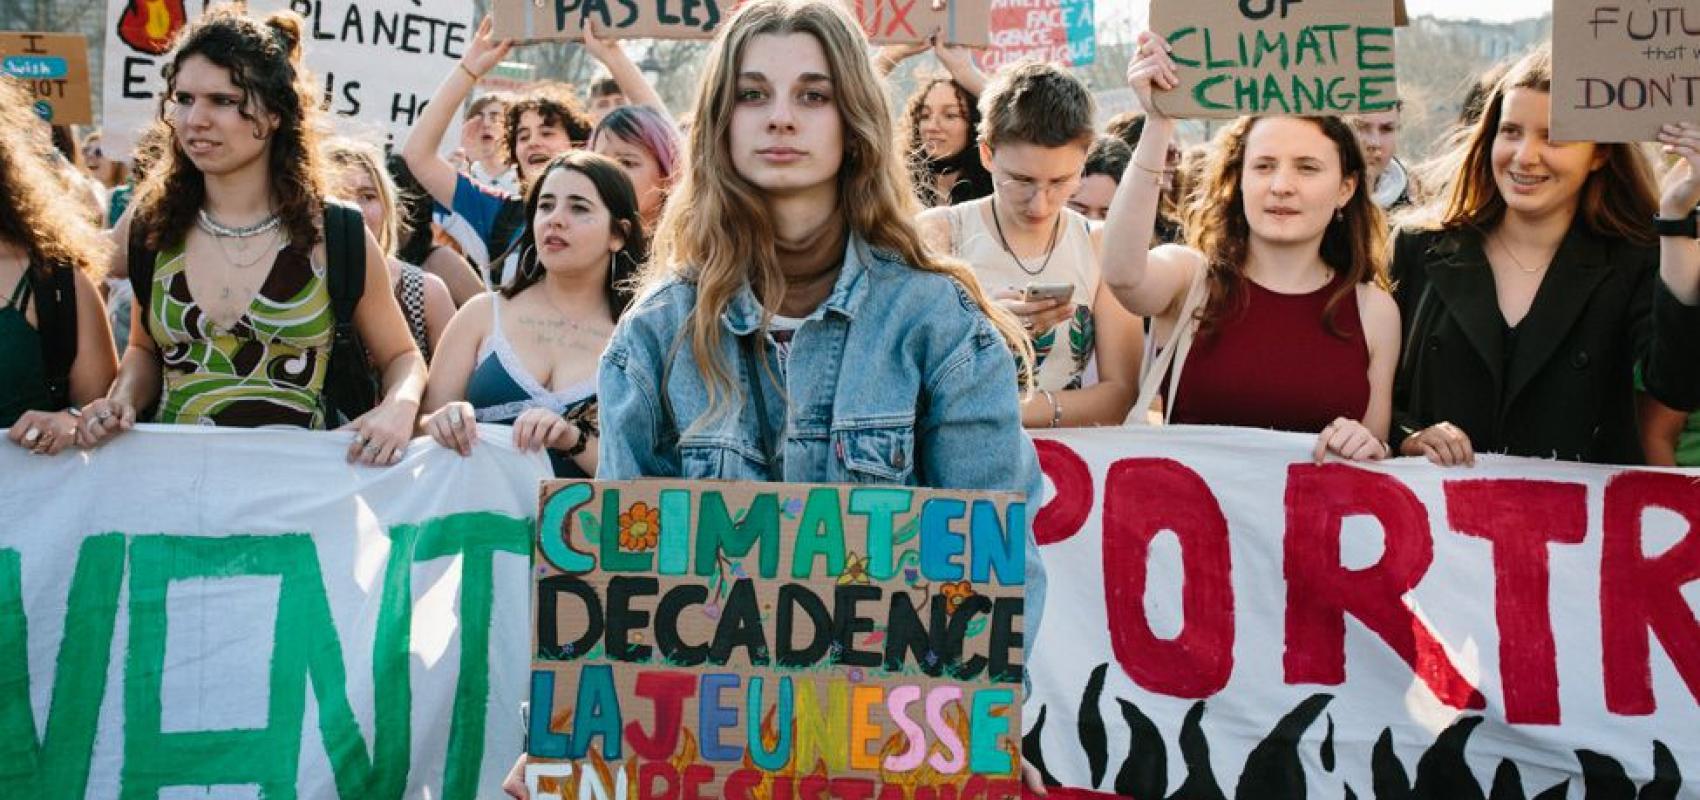 Marche pour le climat du 25 mars 2022 à Paris, suite à l'appel de Youth for Climate France pour rappeler l'importance des enjeux climatiques en période électorale. -  - © Philippe Labrosse / Grande Commande photojournalisme